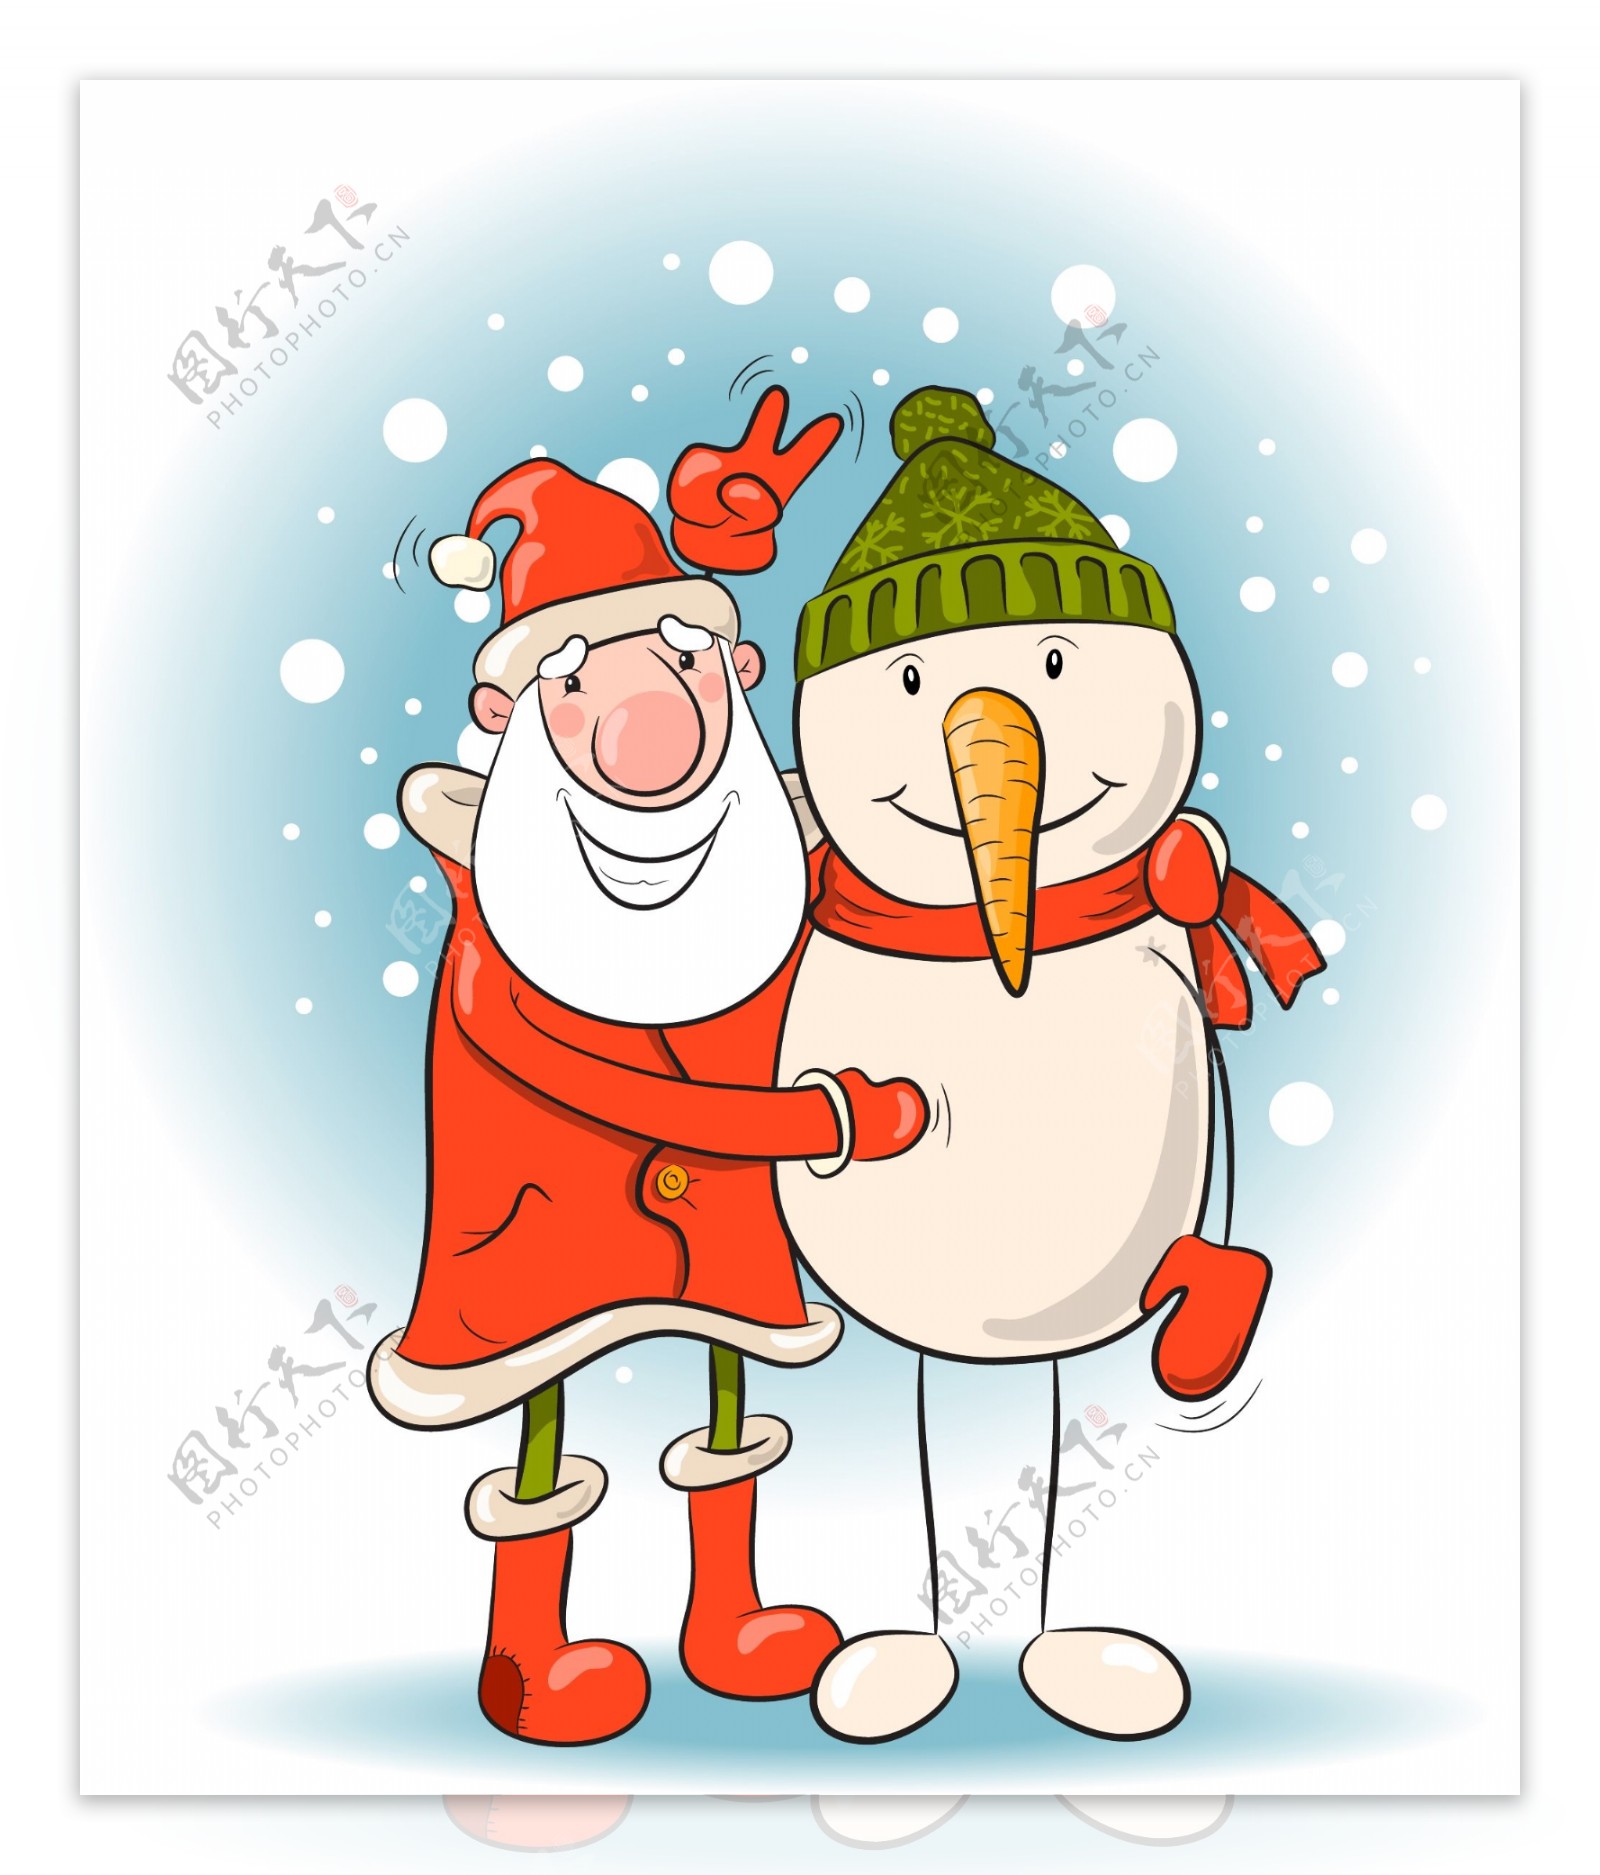 圣诞老人与雪人图片